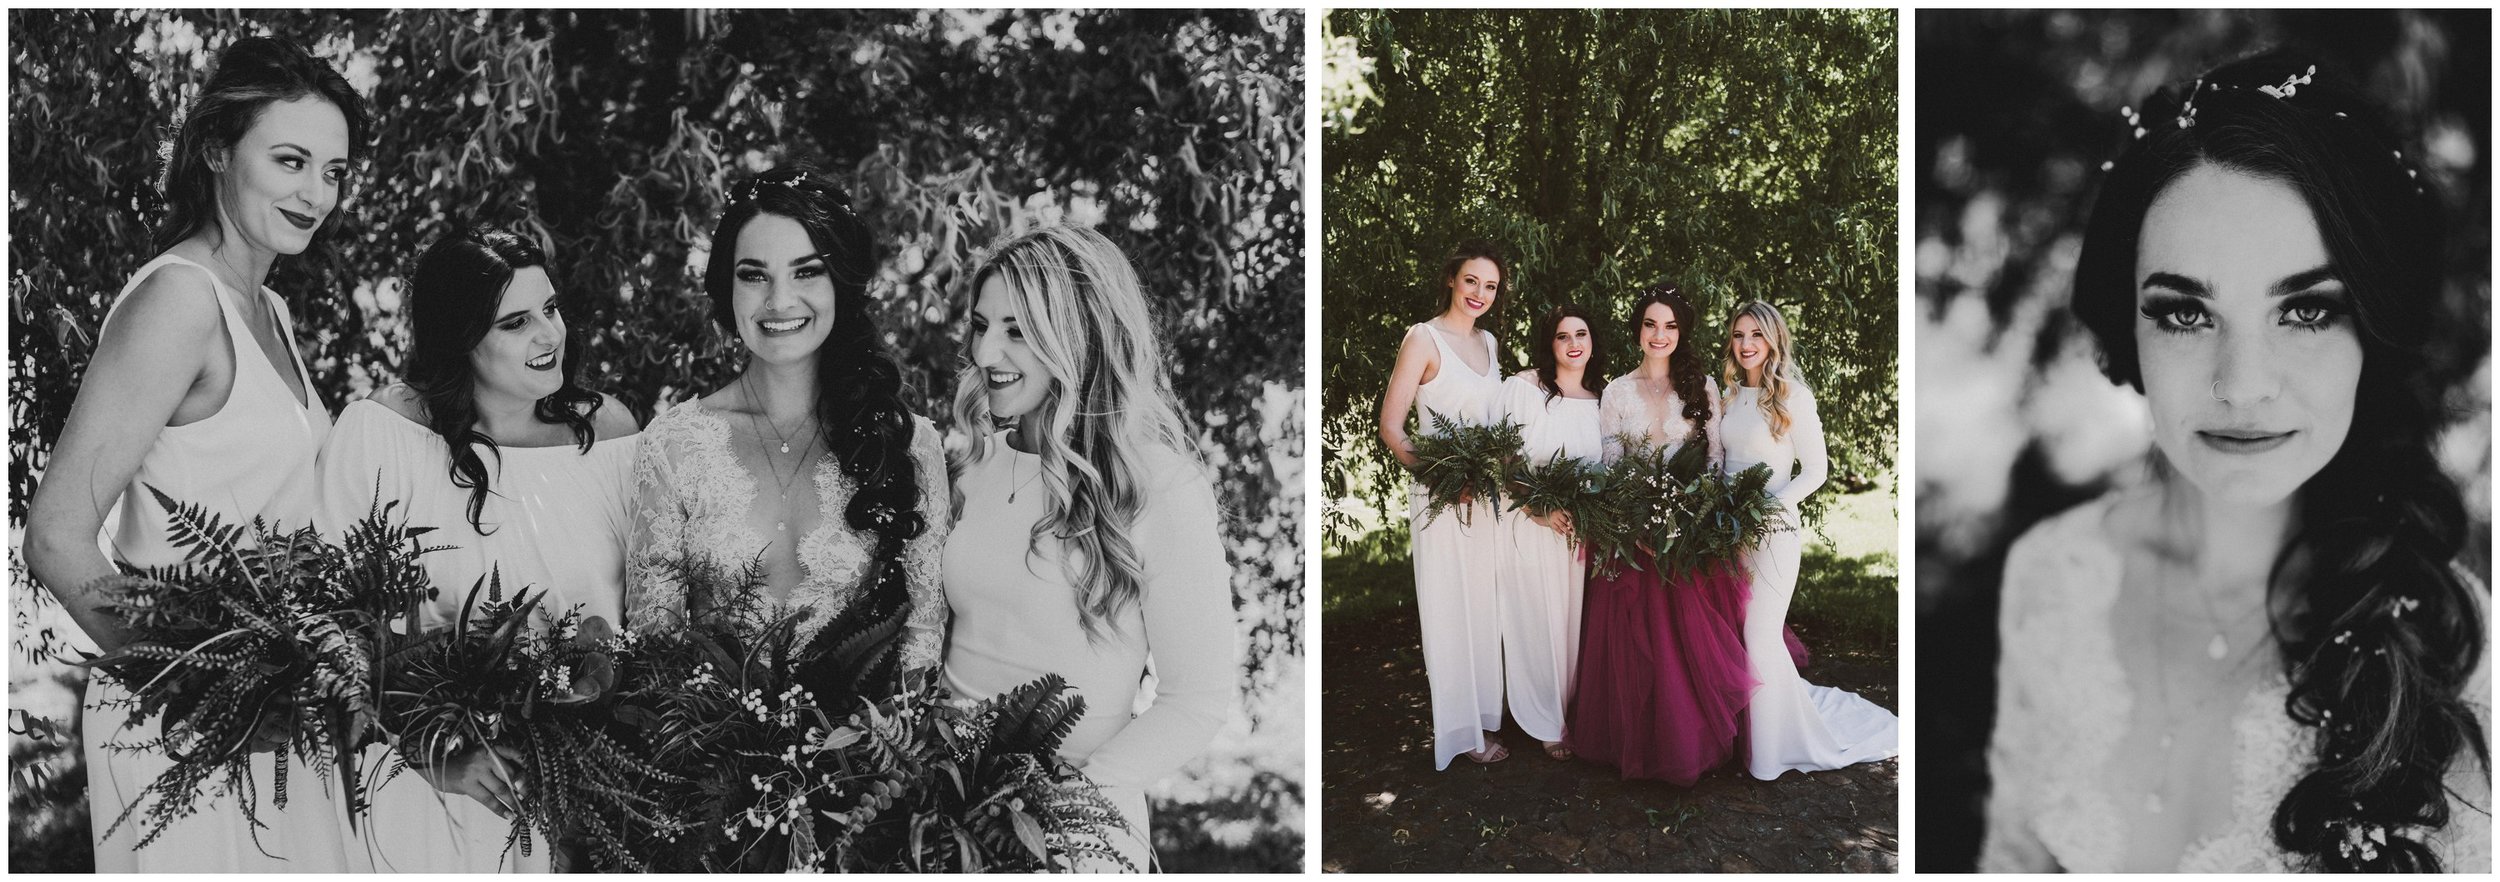 TONY-GAMBINO-PHOTOGRAPHY-BEND-OREGON-WEDDING-SHOOT-000_1517 bridesmaids.jpg